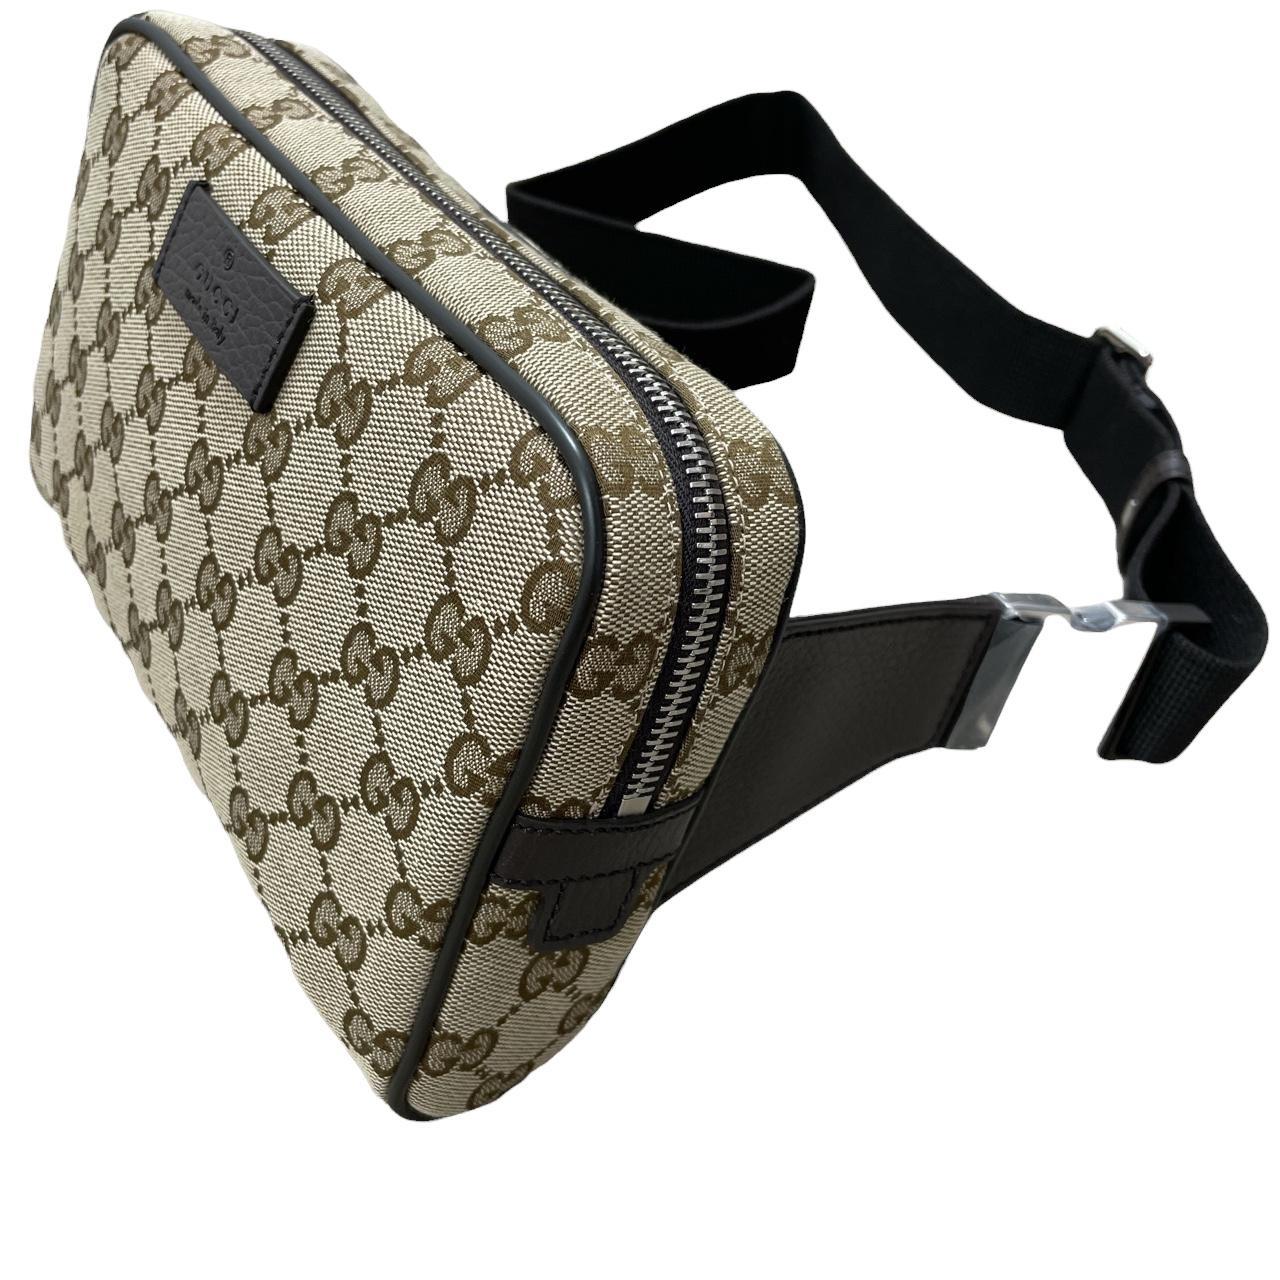 Gucci belt bag UNISEX Authentic vintage item sourced - Depop